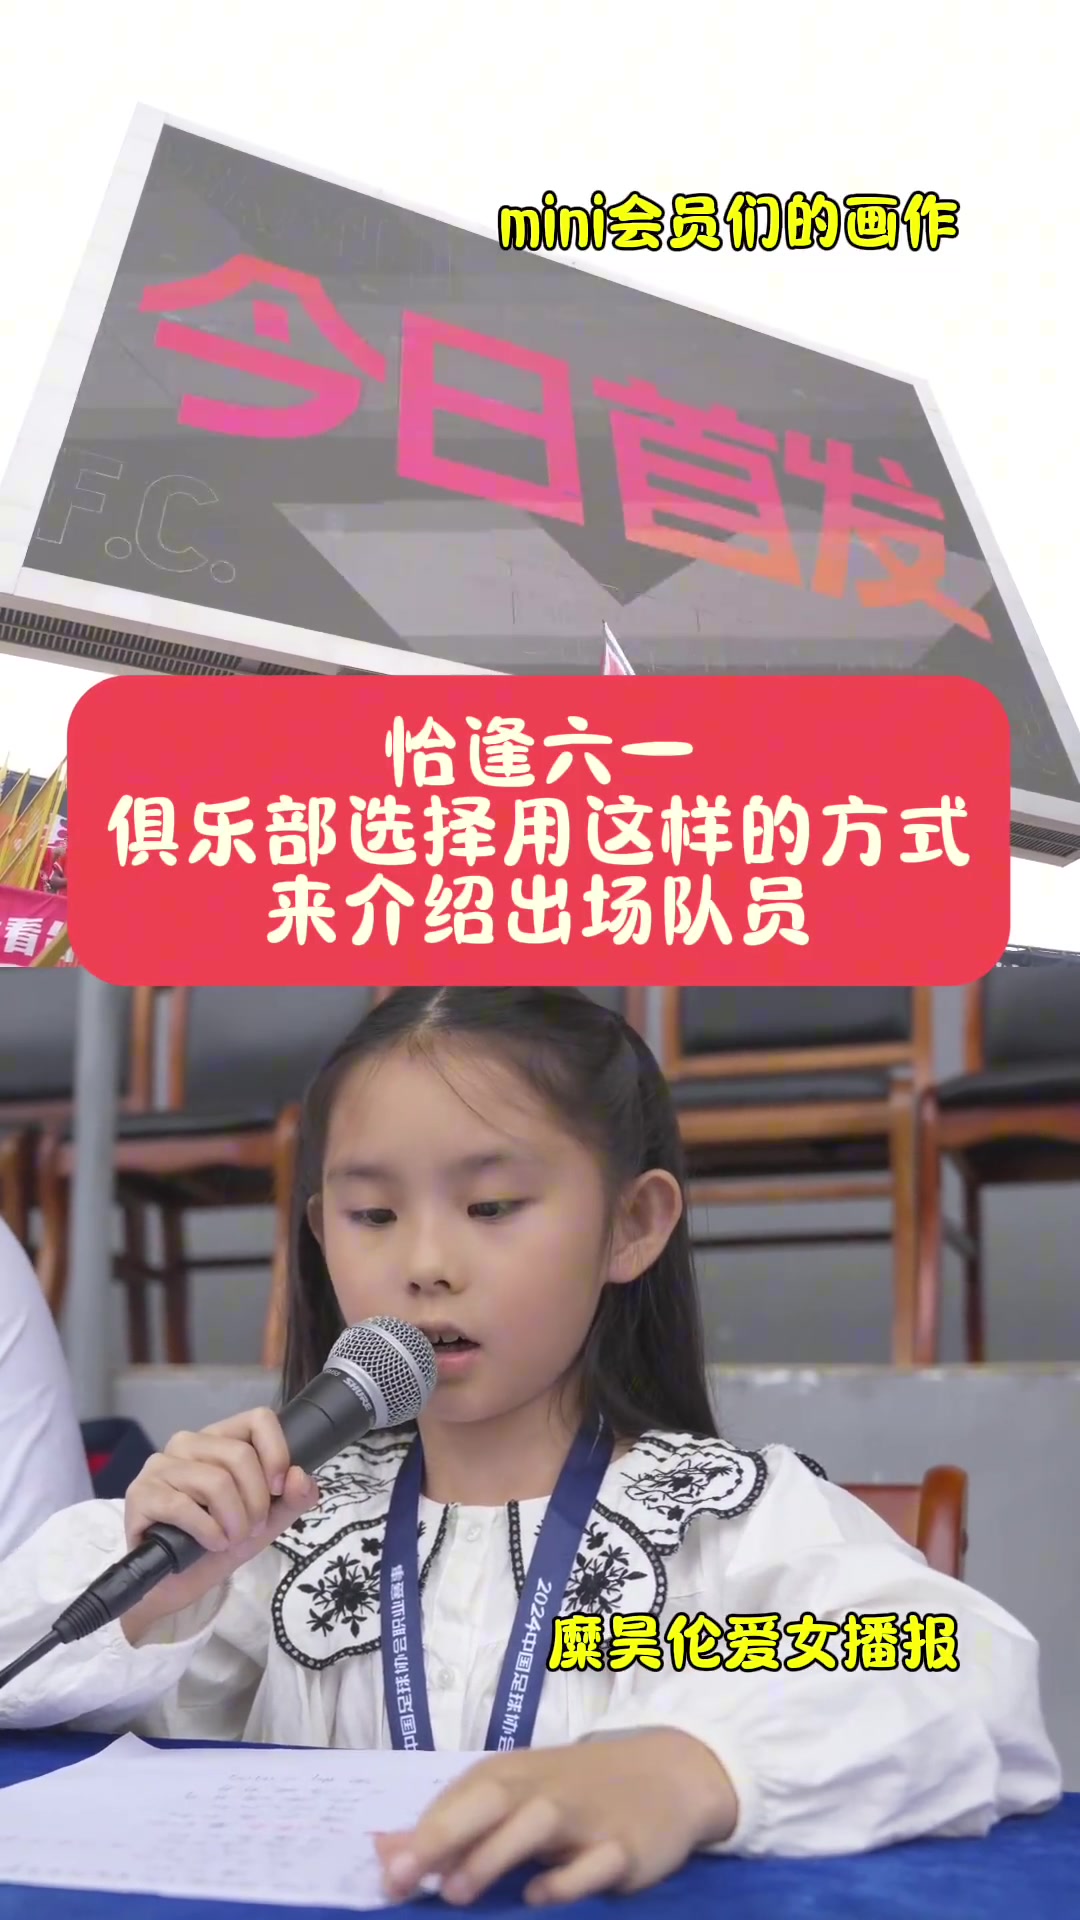 六一儿童节，陕西联合让糜昊伦女儿介绍首发阵容